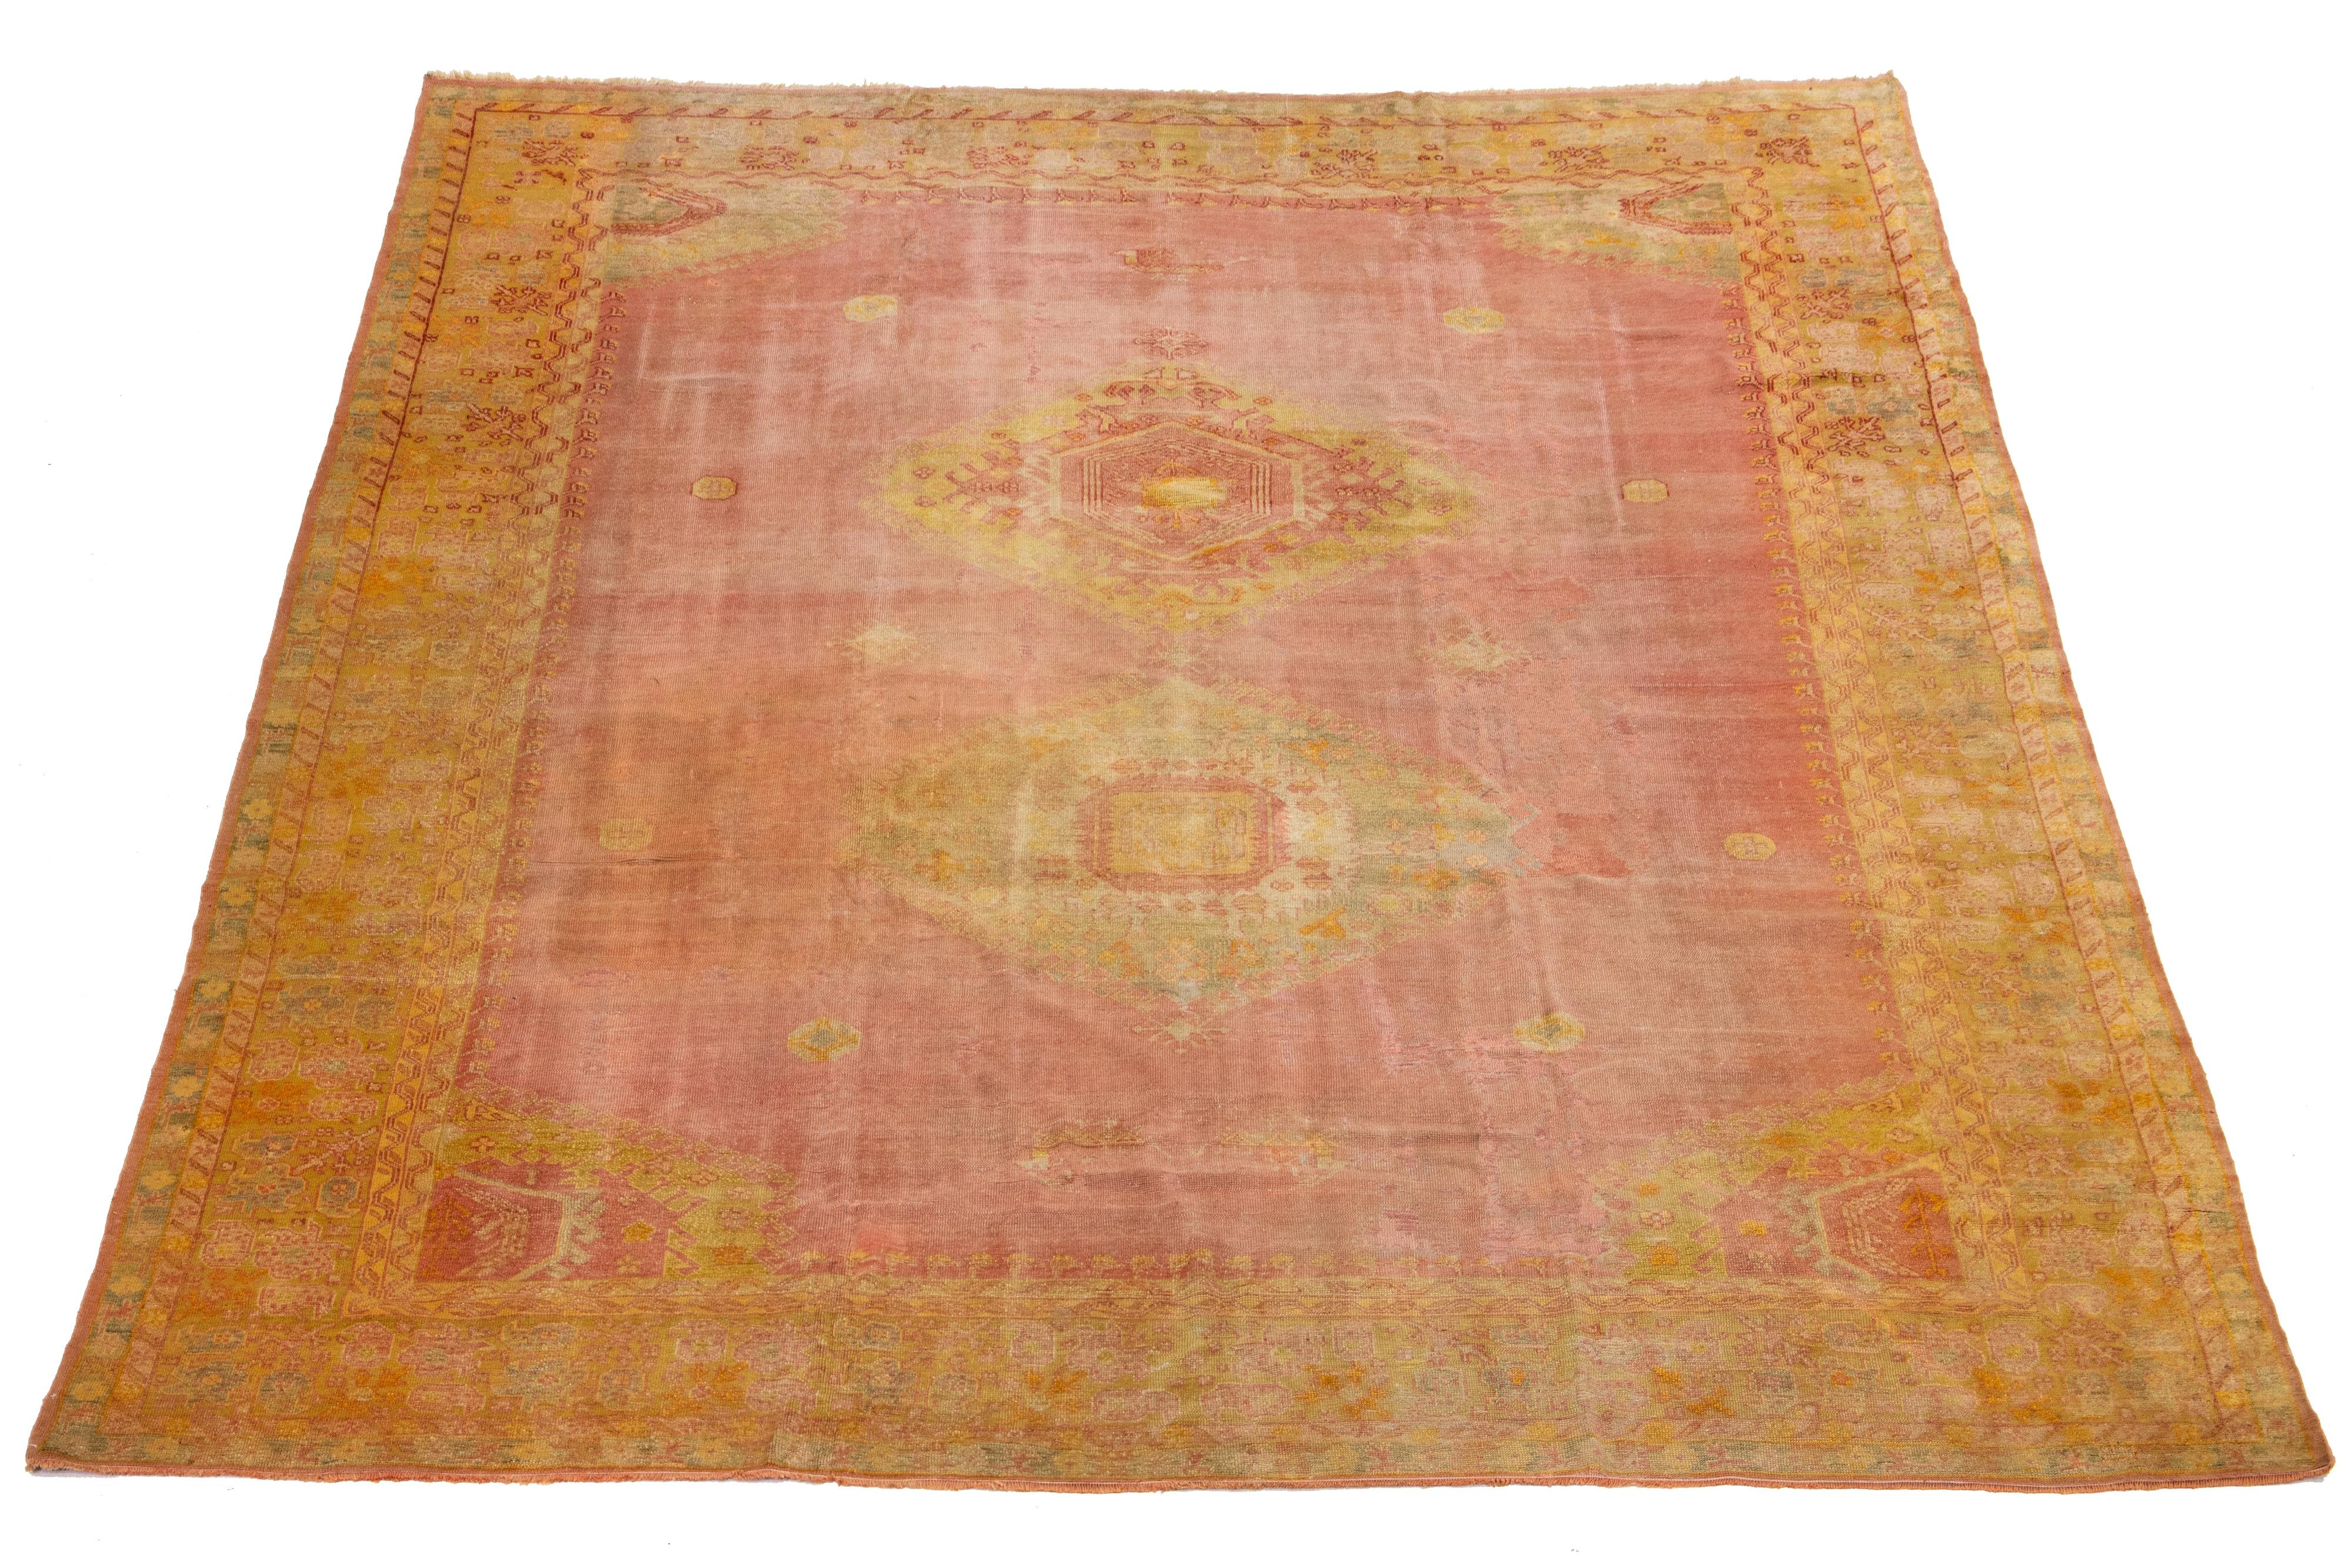 Dieser antike türkische Oushak-Teppich ist ein Unikat, das aus hochwertiger Wolle handgeknüpft wurde. Das auffällige terrakottafarbene Farbfeld und das filigrane Medaillonmotiv mit gelben und beigen Akzenten machen es zu einem echten